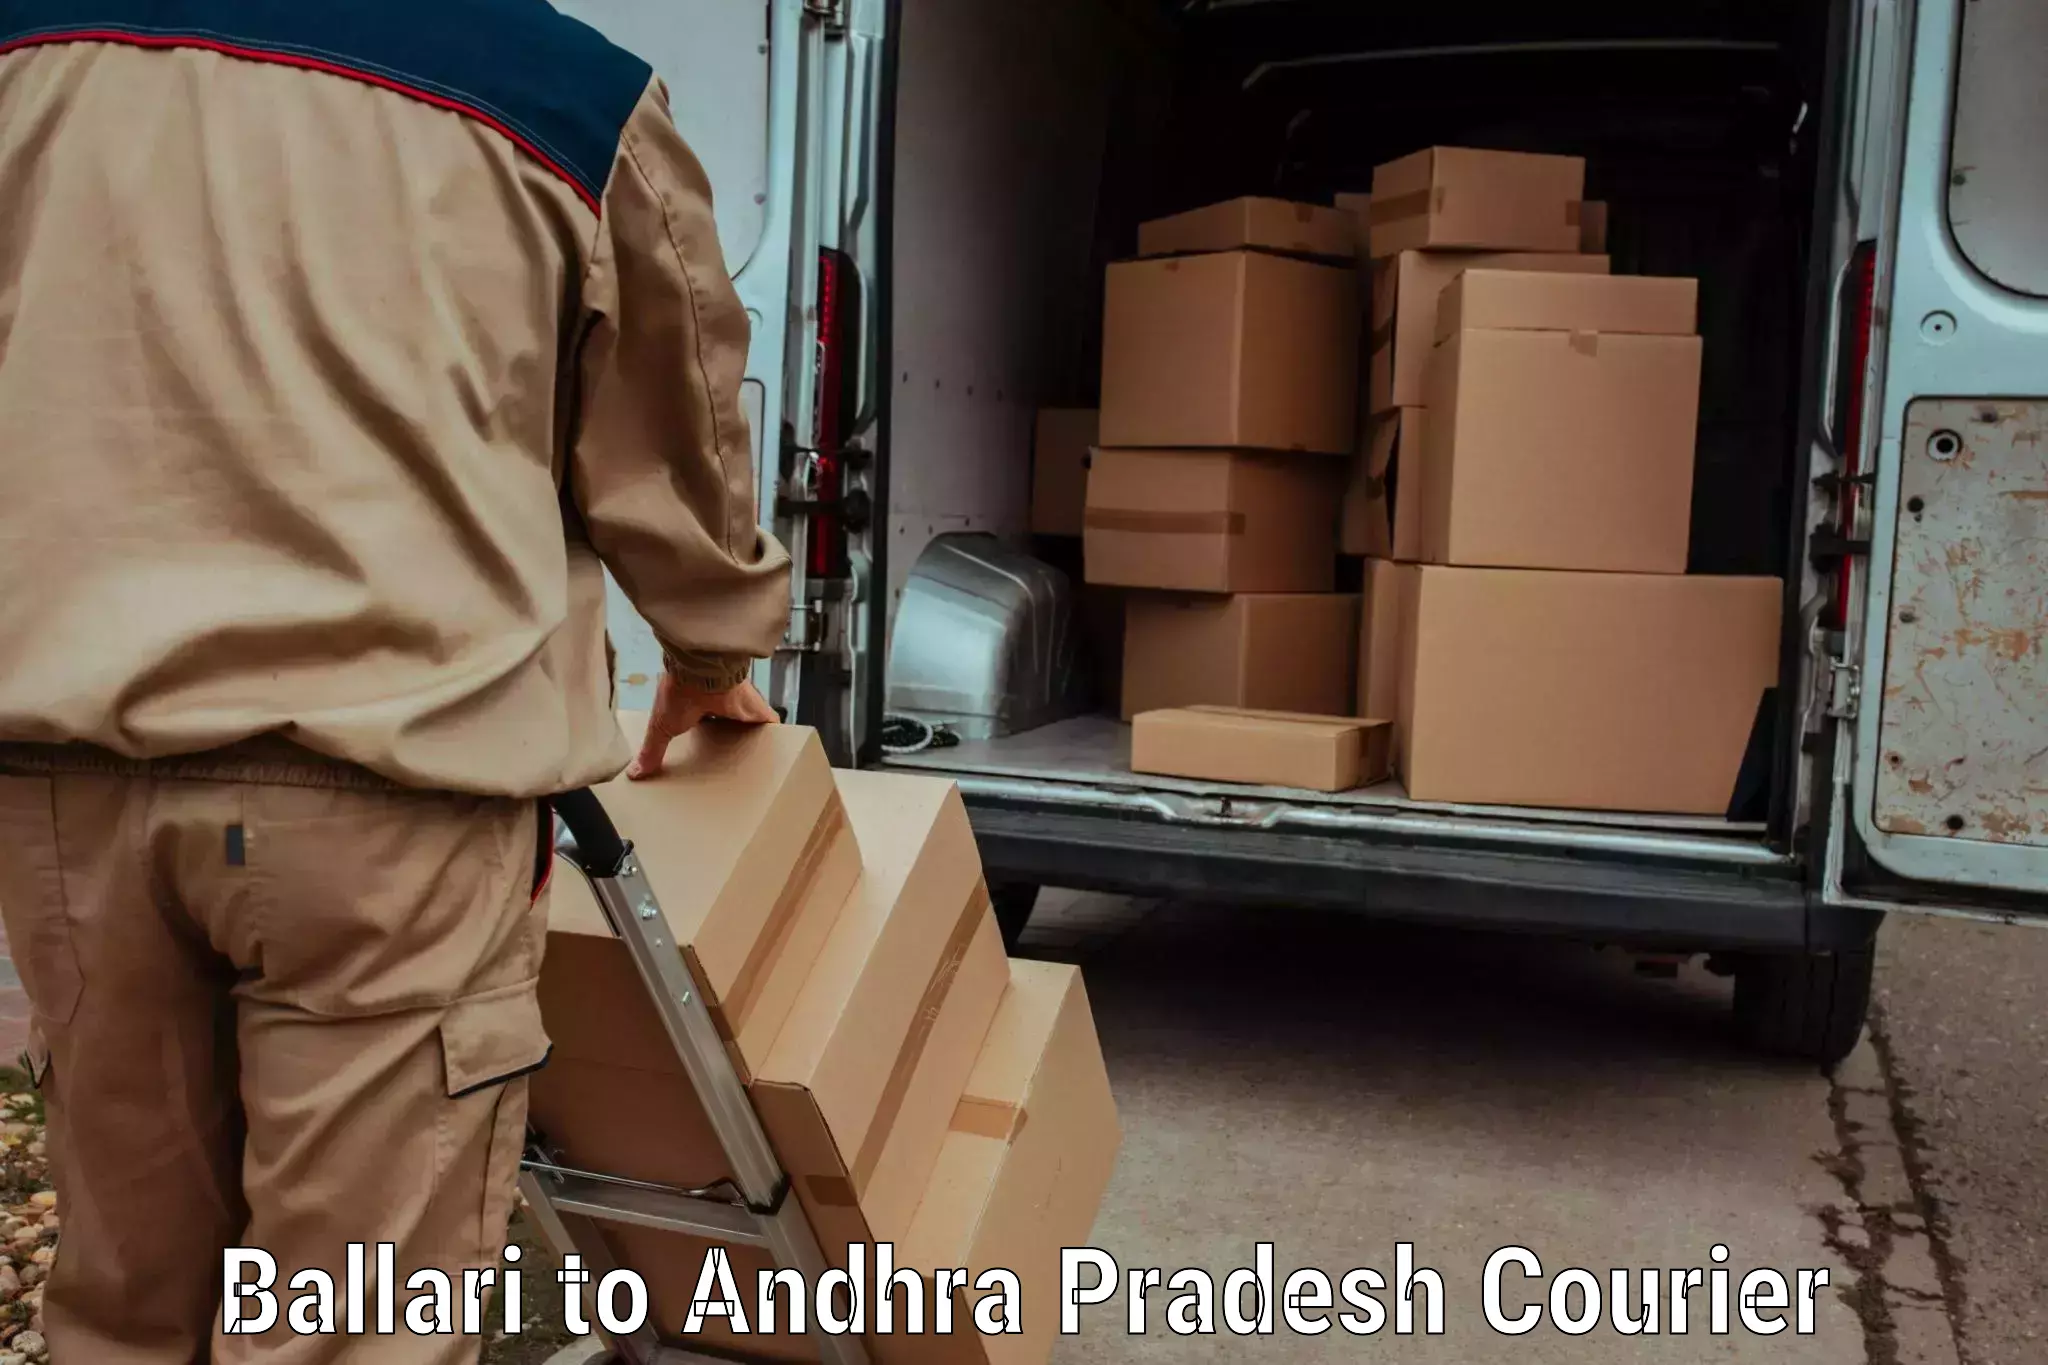 Efficient parcel service Ballari to Yerravaram